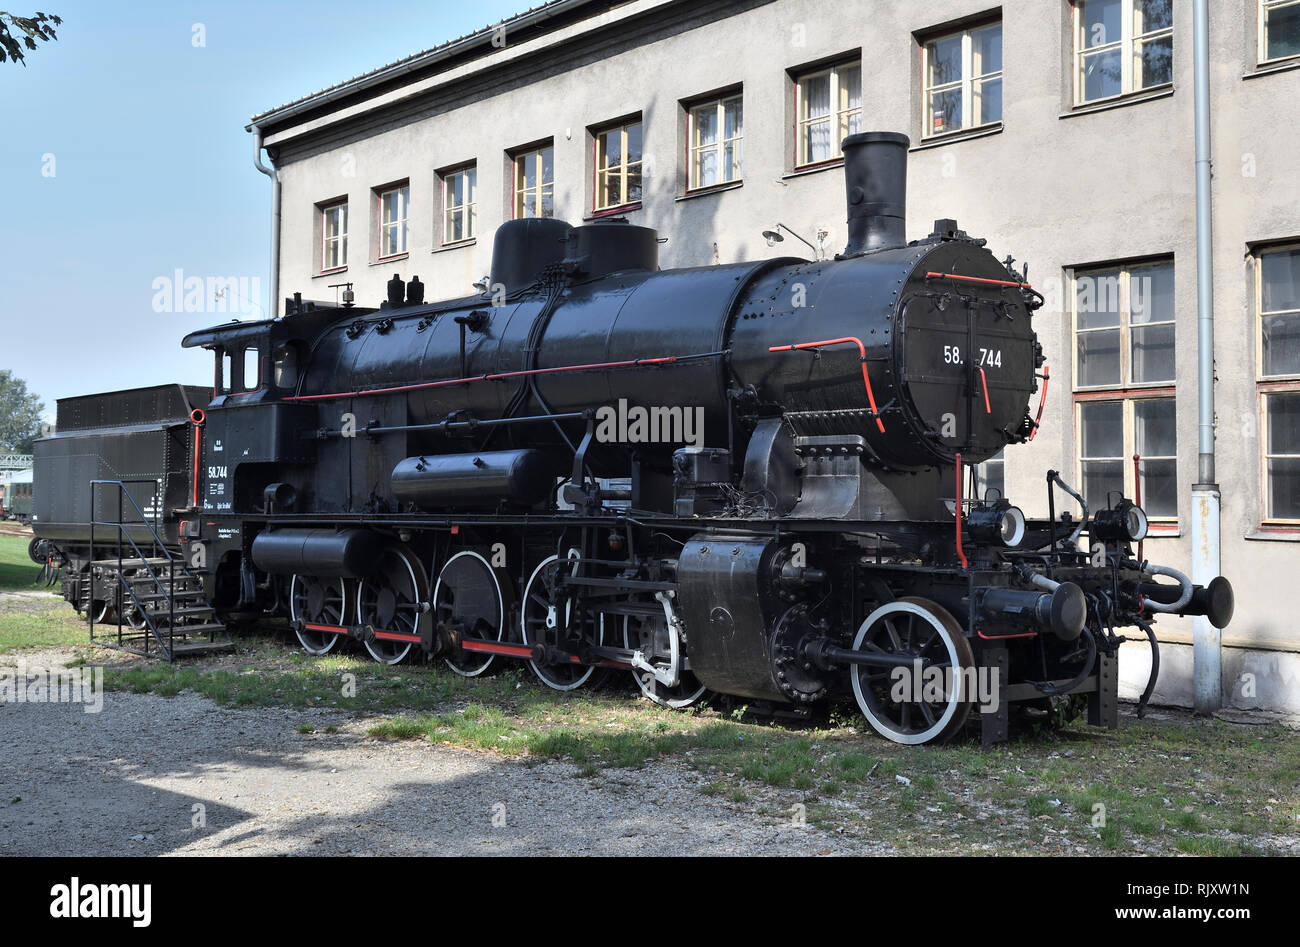 eisenbahnmuseum;das heizhaus;strasshof;vienna;austria;steam locomotive;58.744 Stock Photo